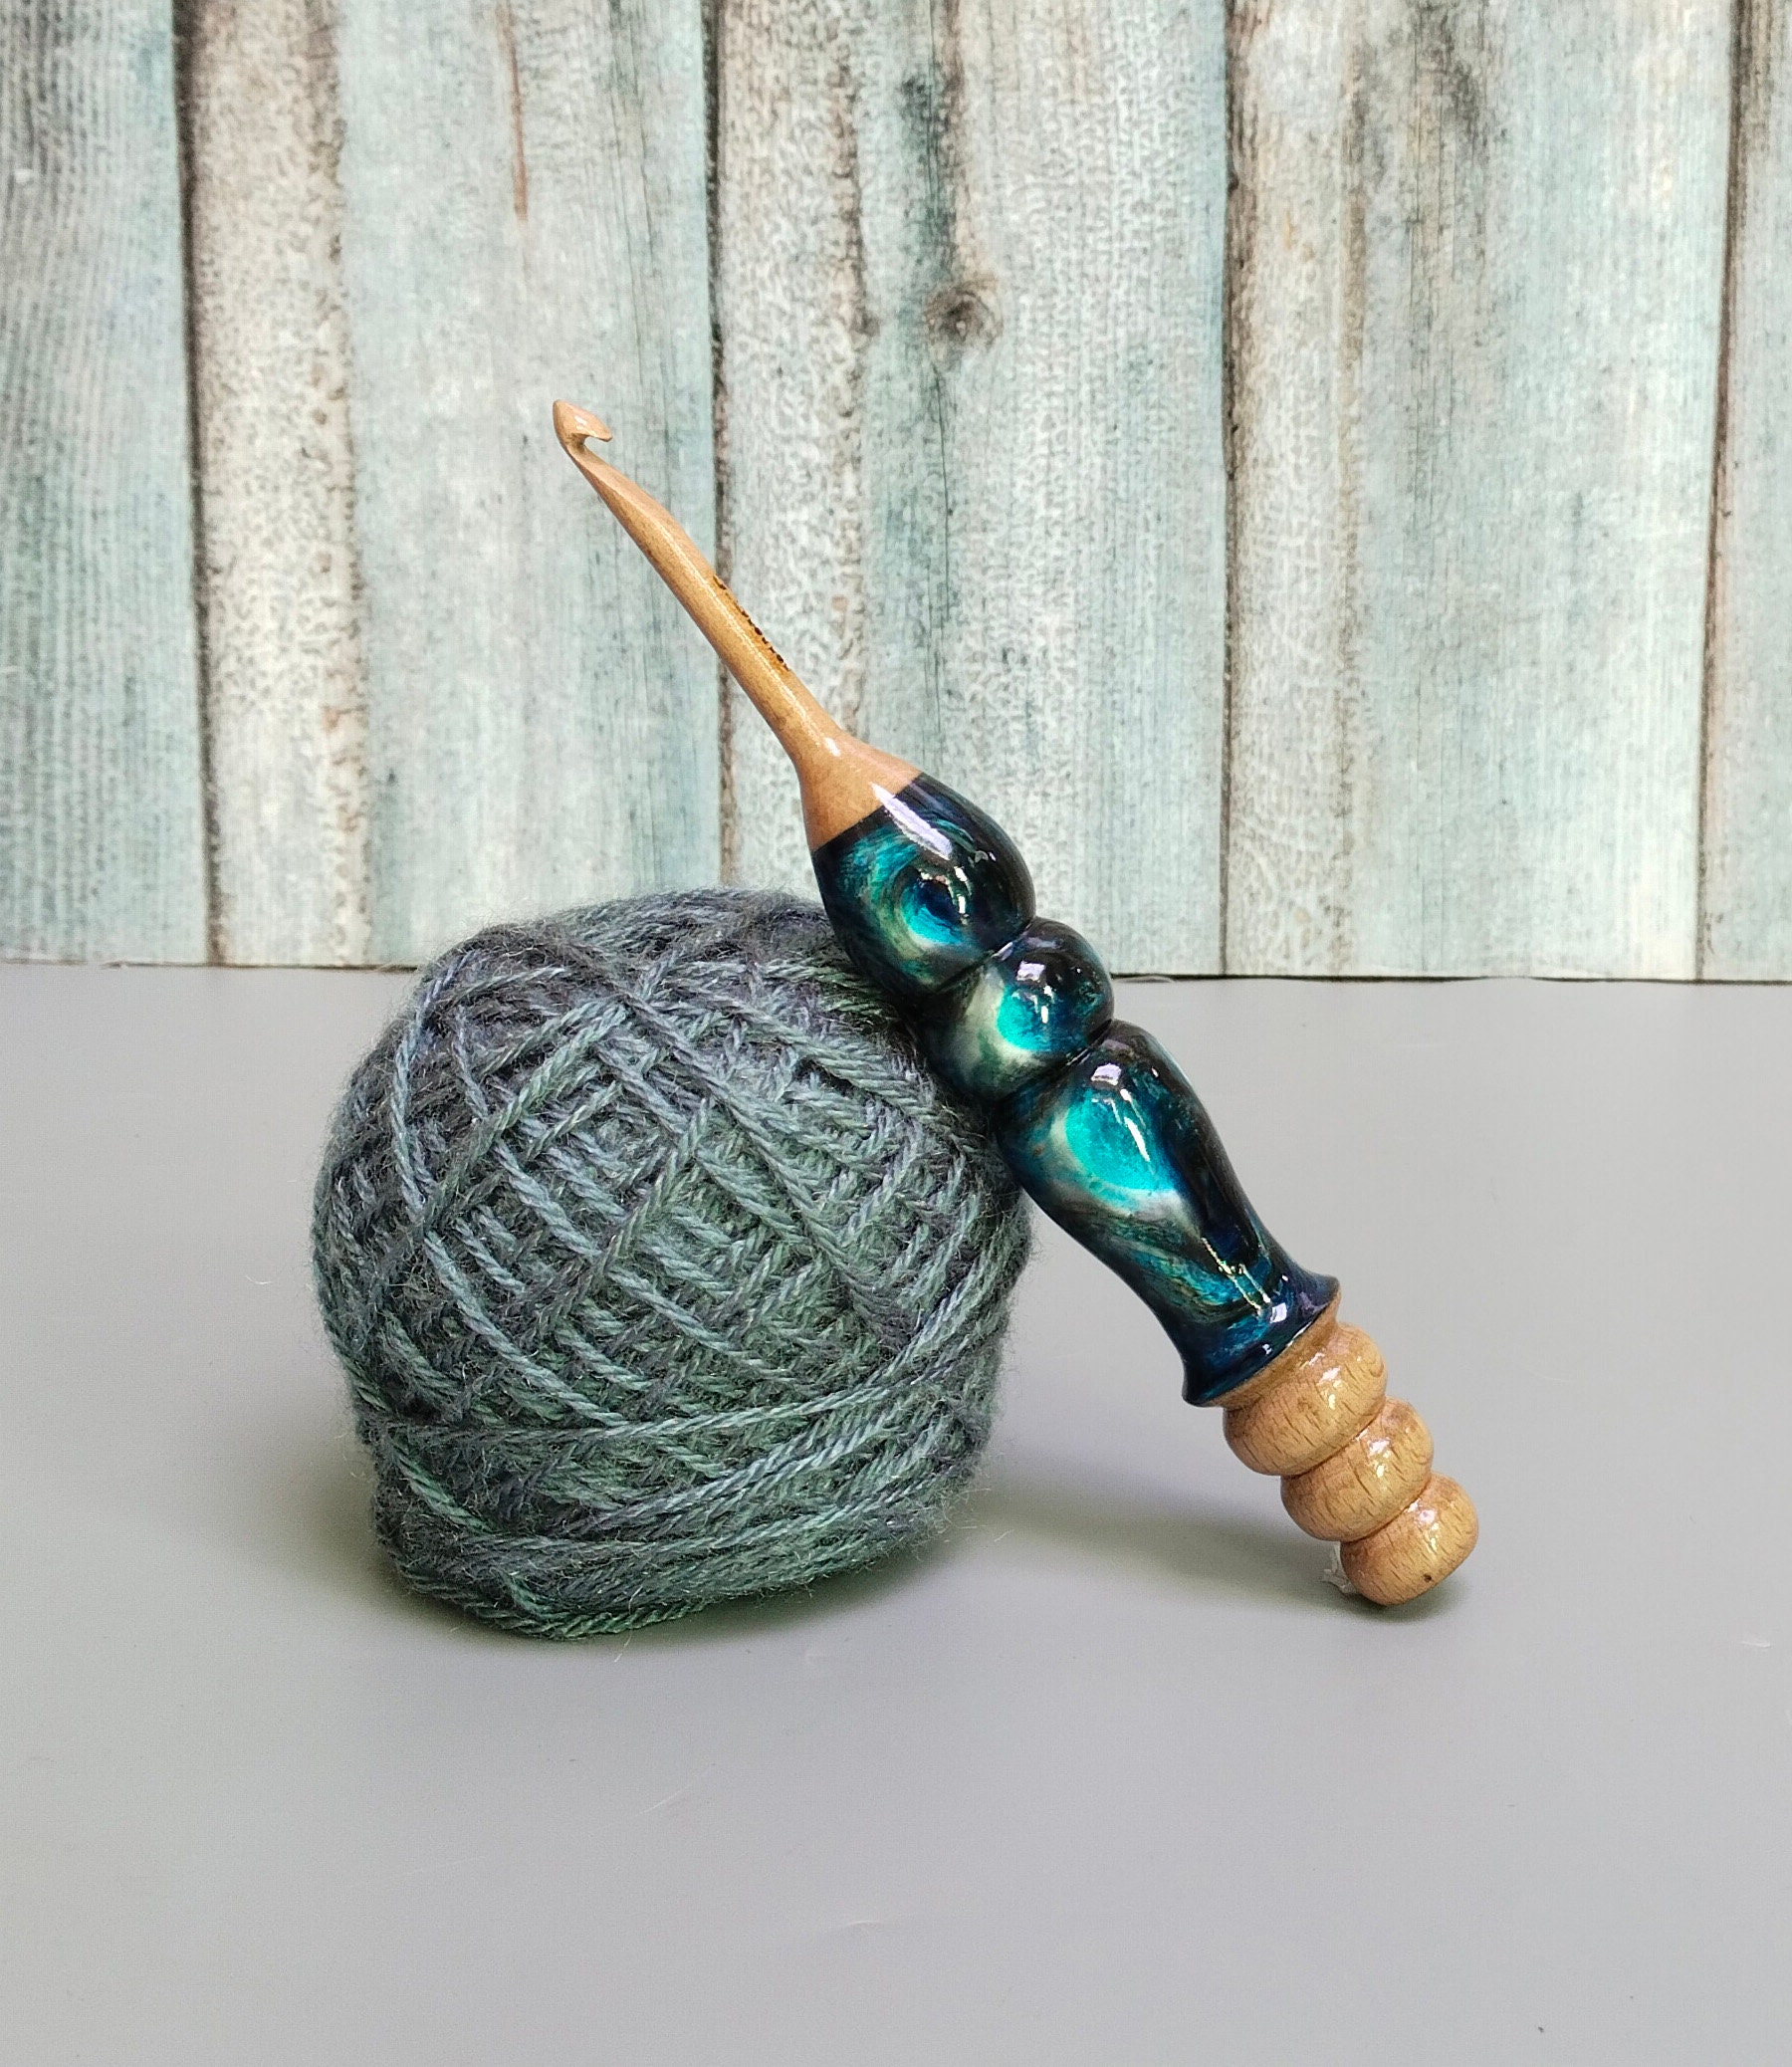 Crochet  Haul! Ergonomic Crochet Hooks That are Detachable? 